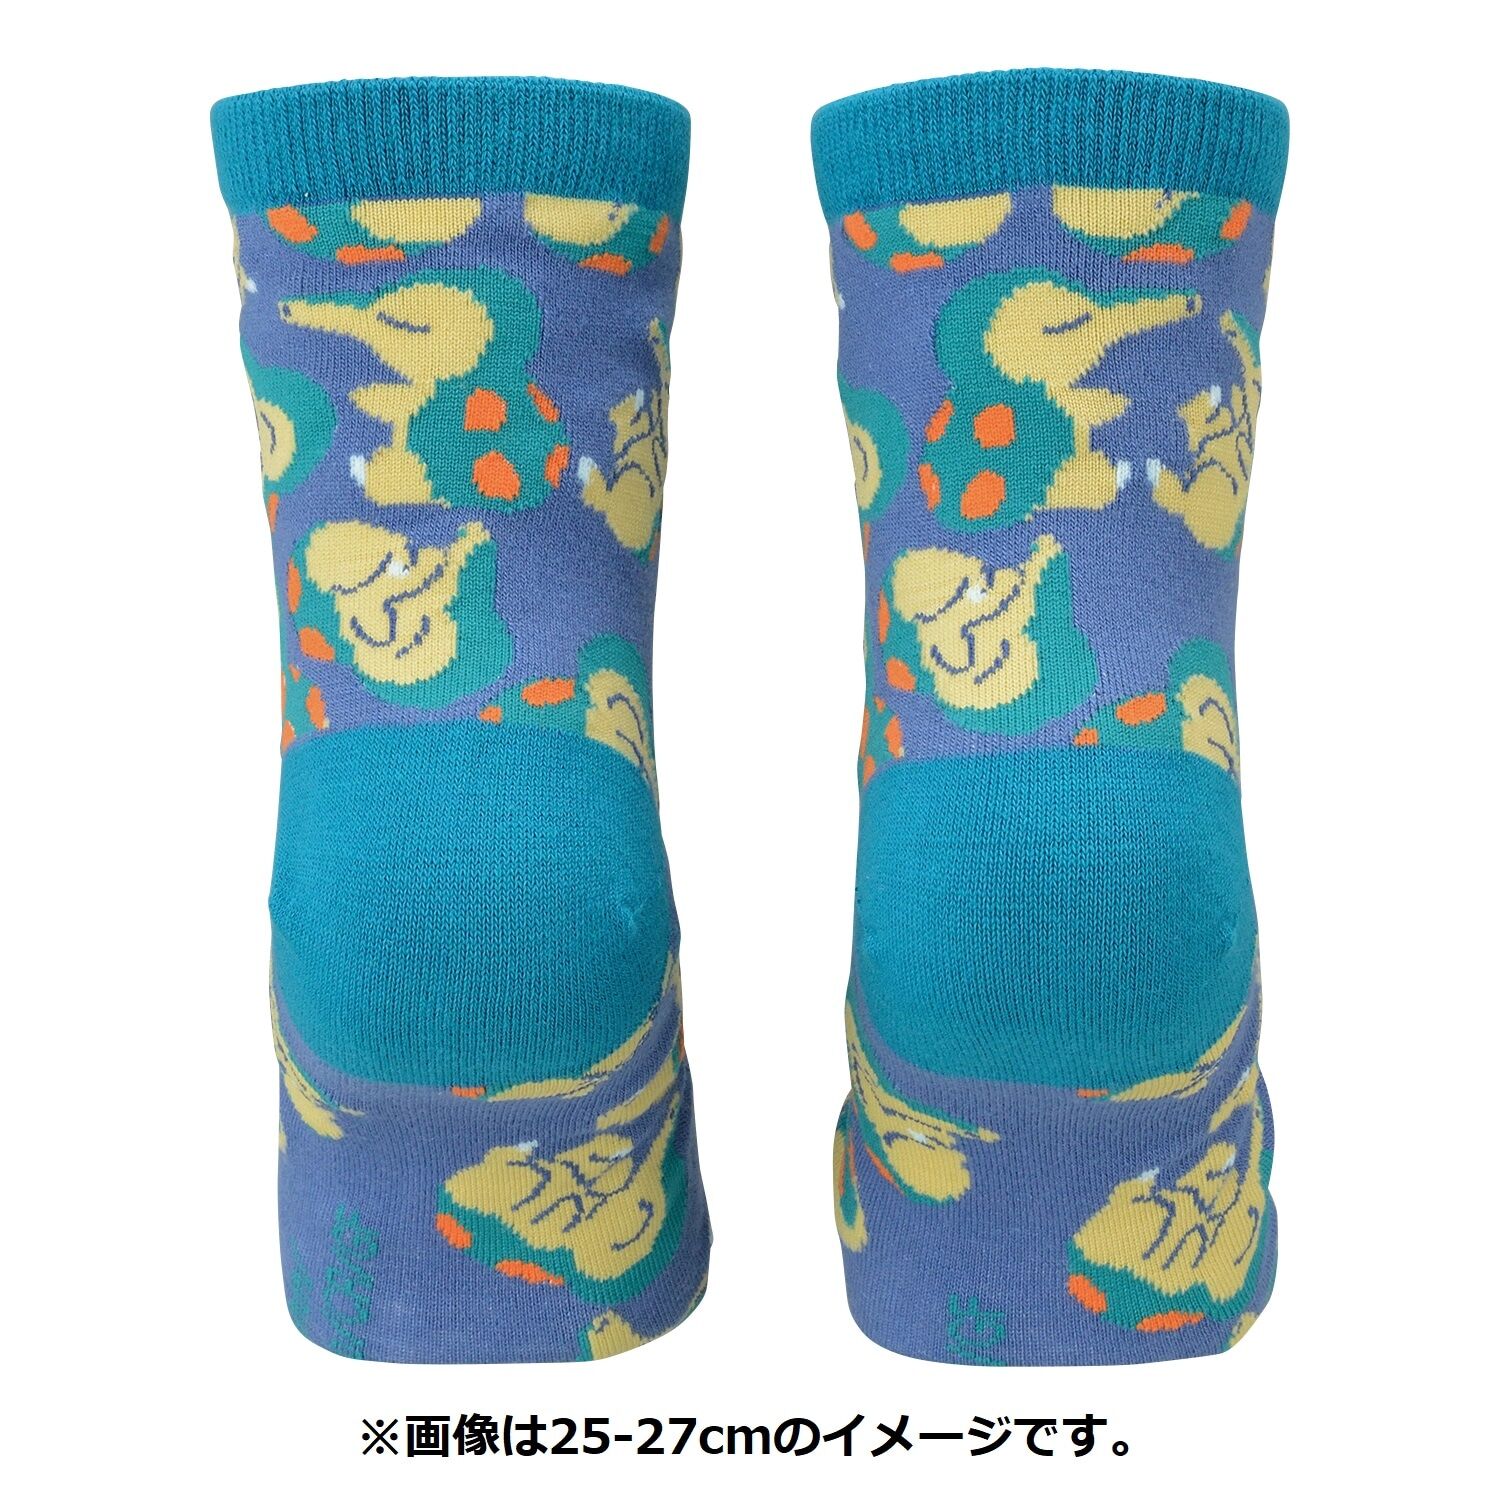 Middle Socks Cyndaquil (25-27cm)